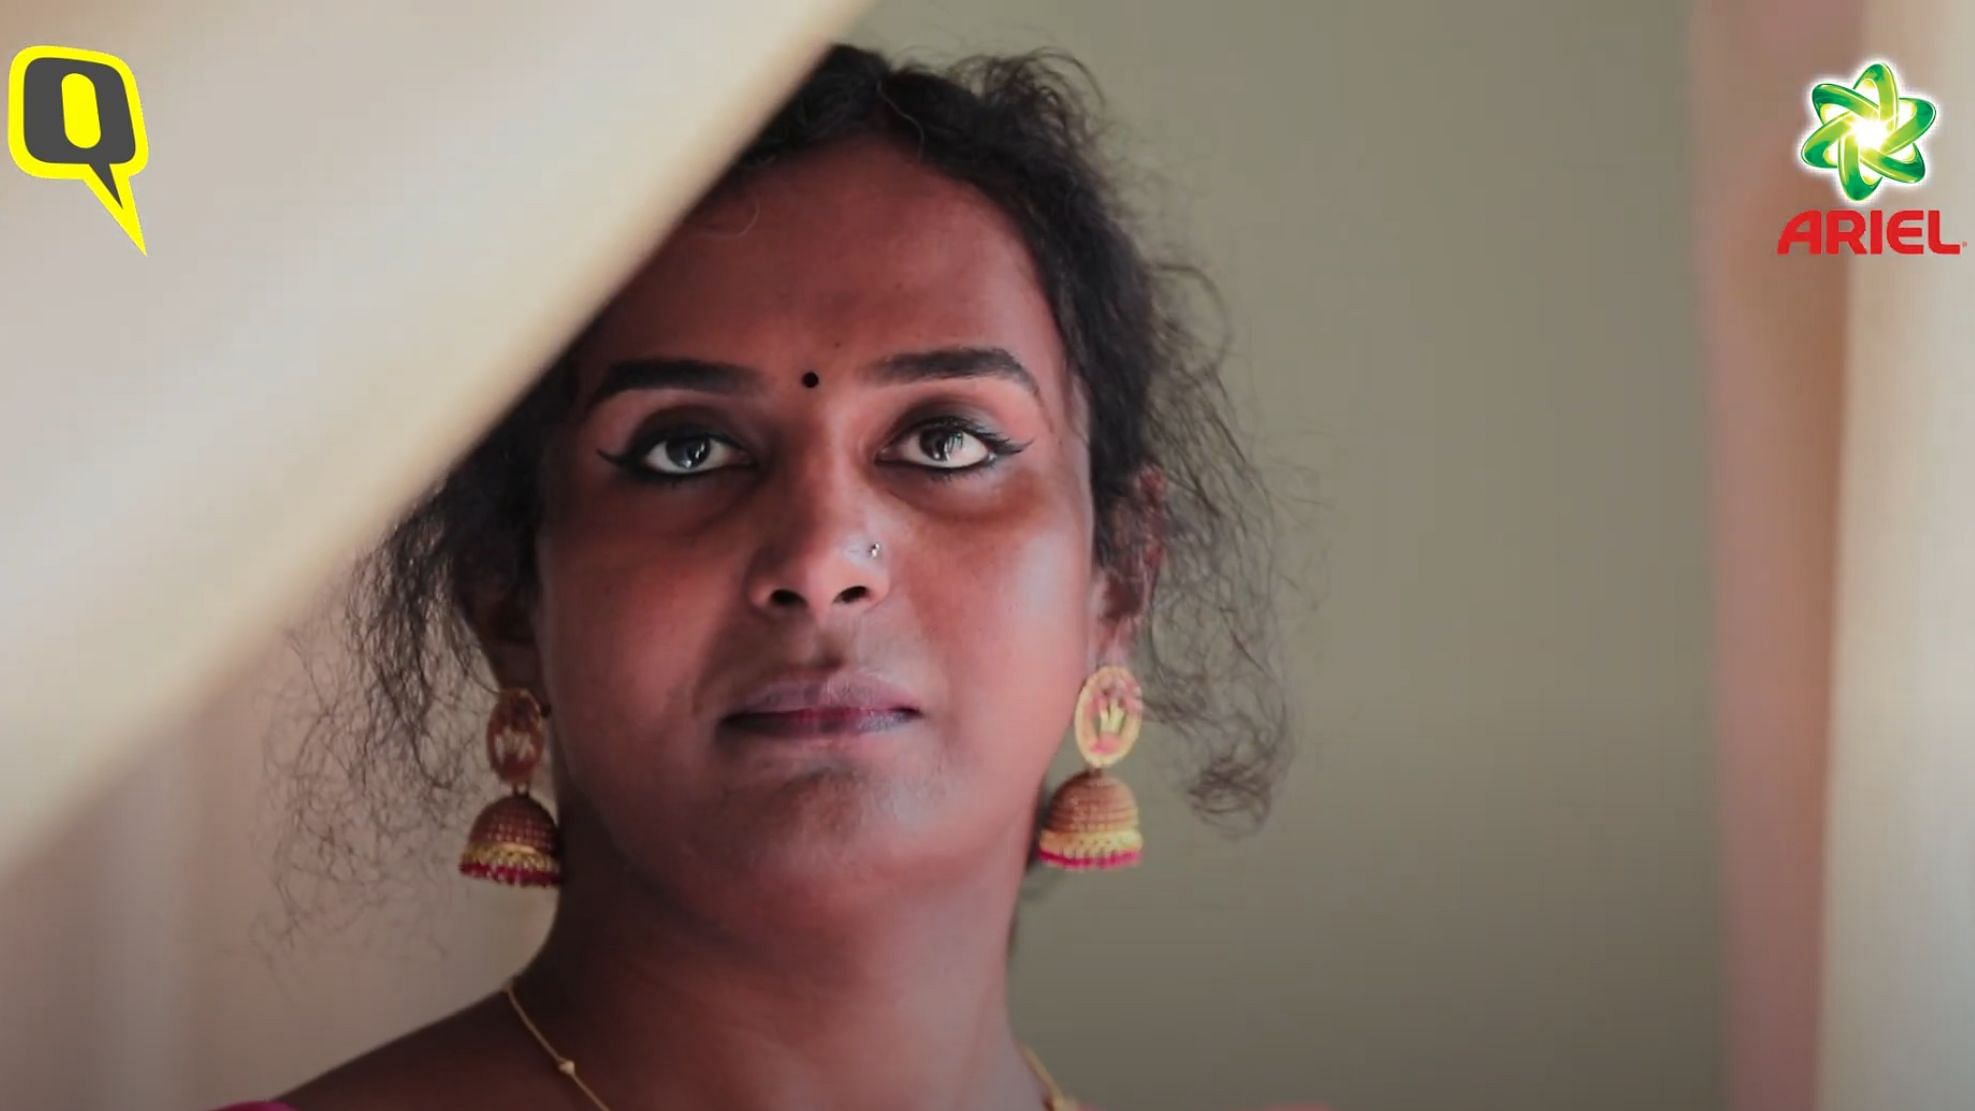 Dr. VS Priya, Kerala’s first transgender doctor